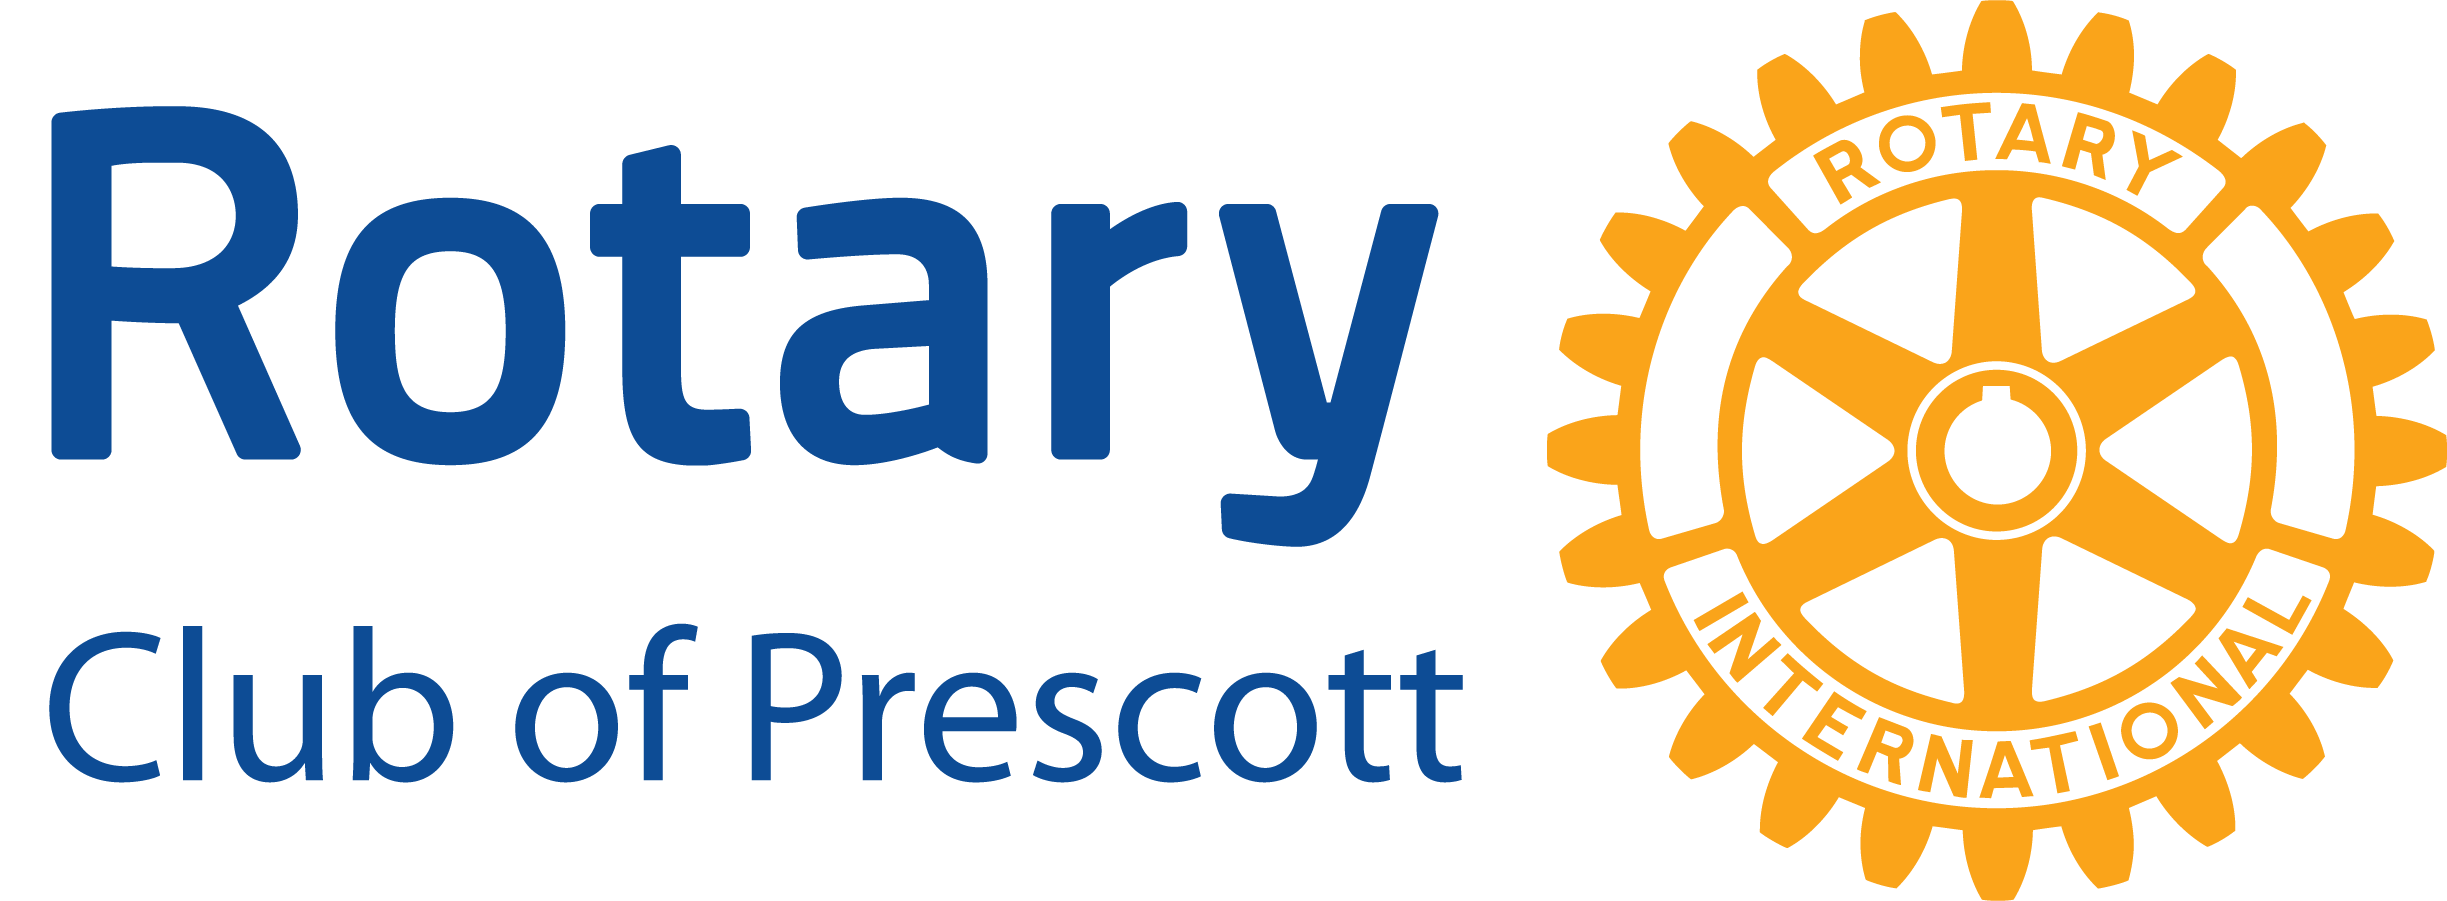 Prescott Rotary Club